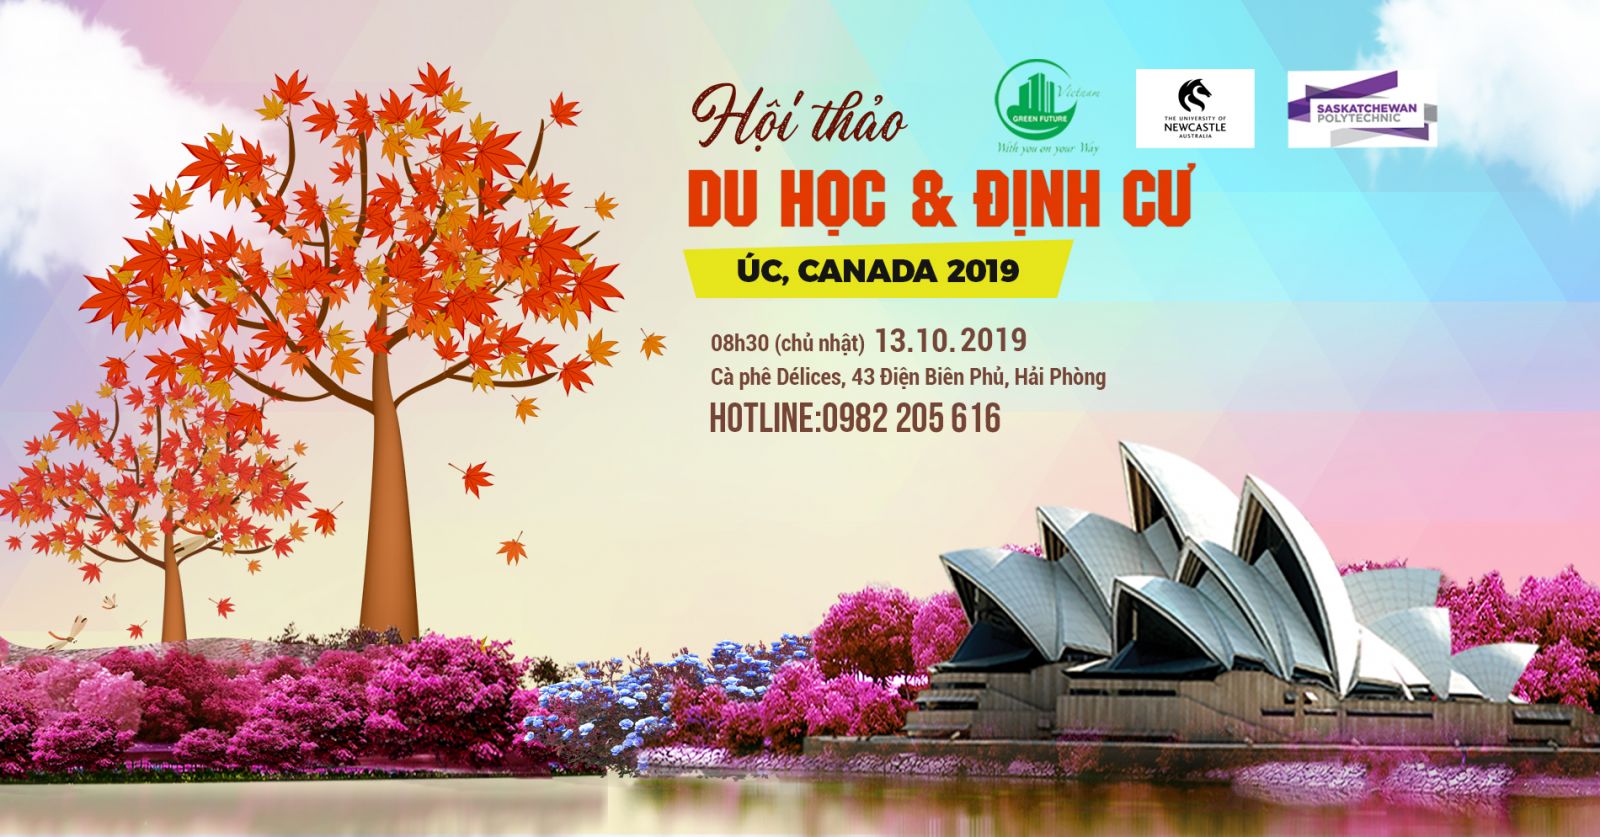 HỘI THẢO DU HỌC & ĐỊNH CƯ ÚC - CANADA 2019